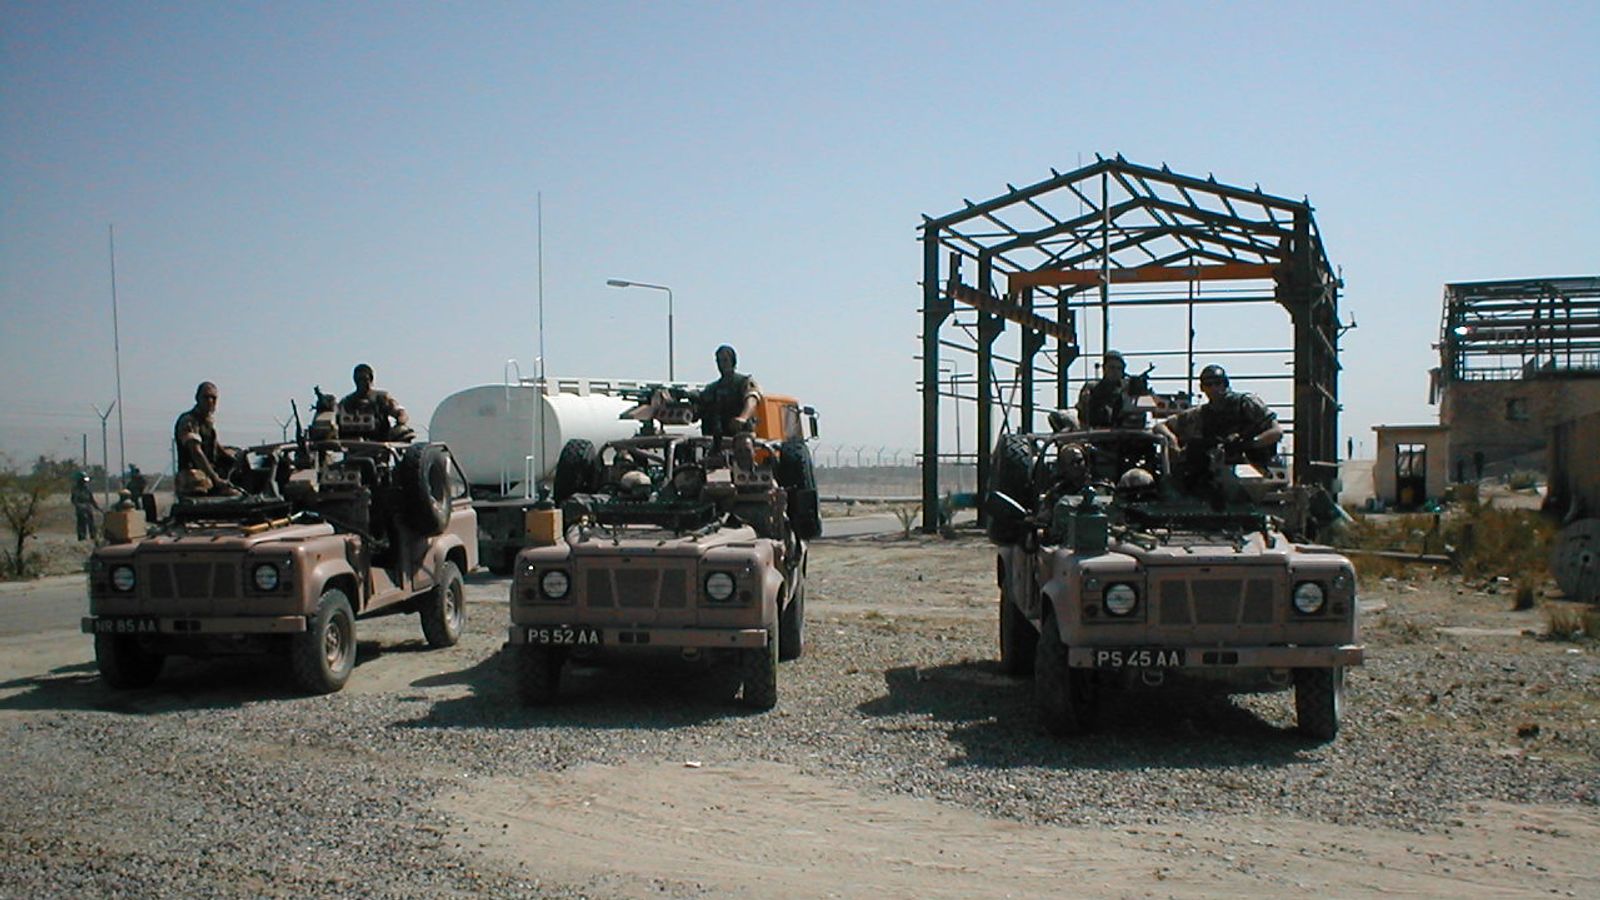 جنود بريطانيون في منشأة كرمة علي في العراق العام 2003 